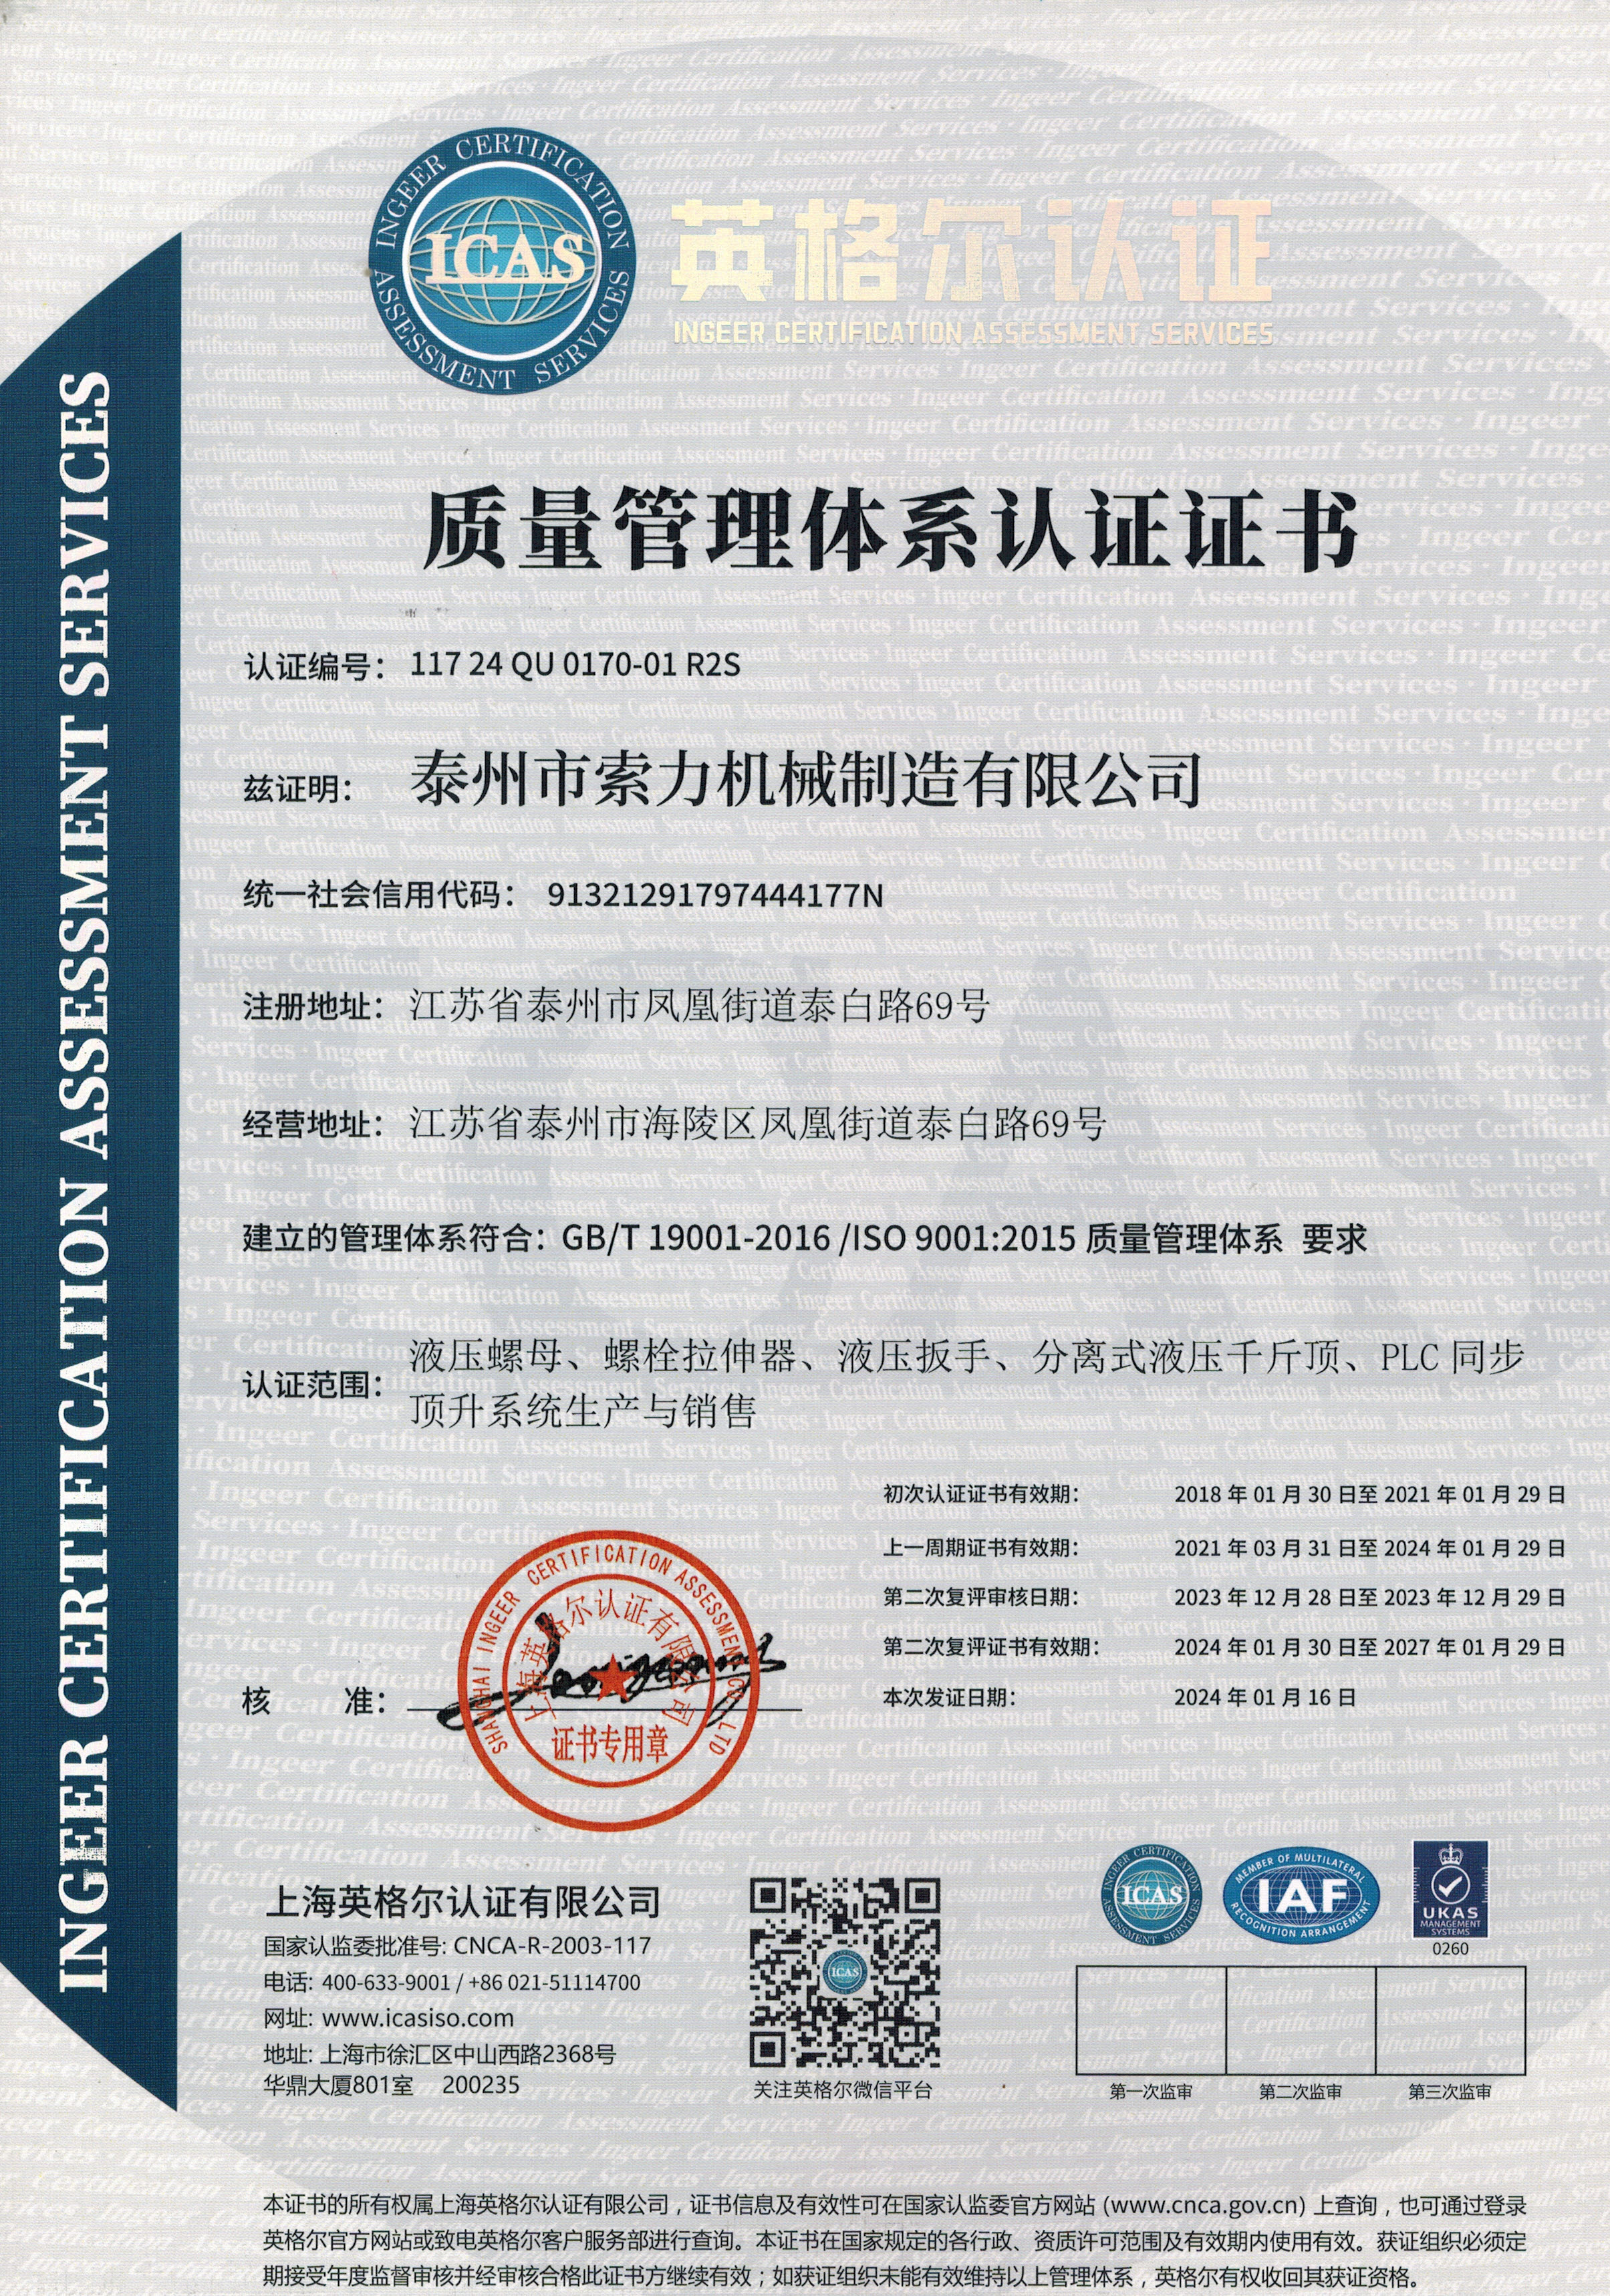 索力机械-质量体系认证-中文版